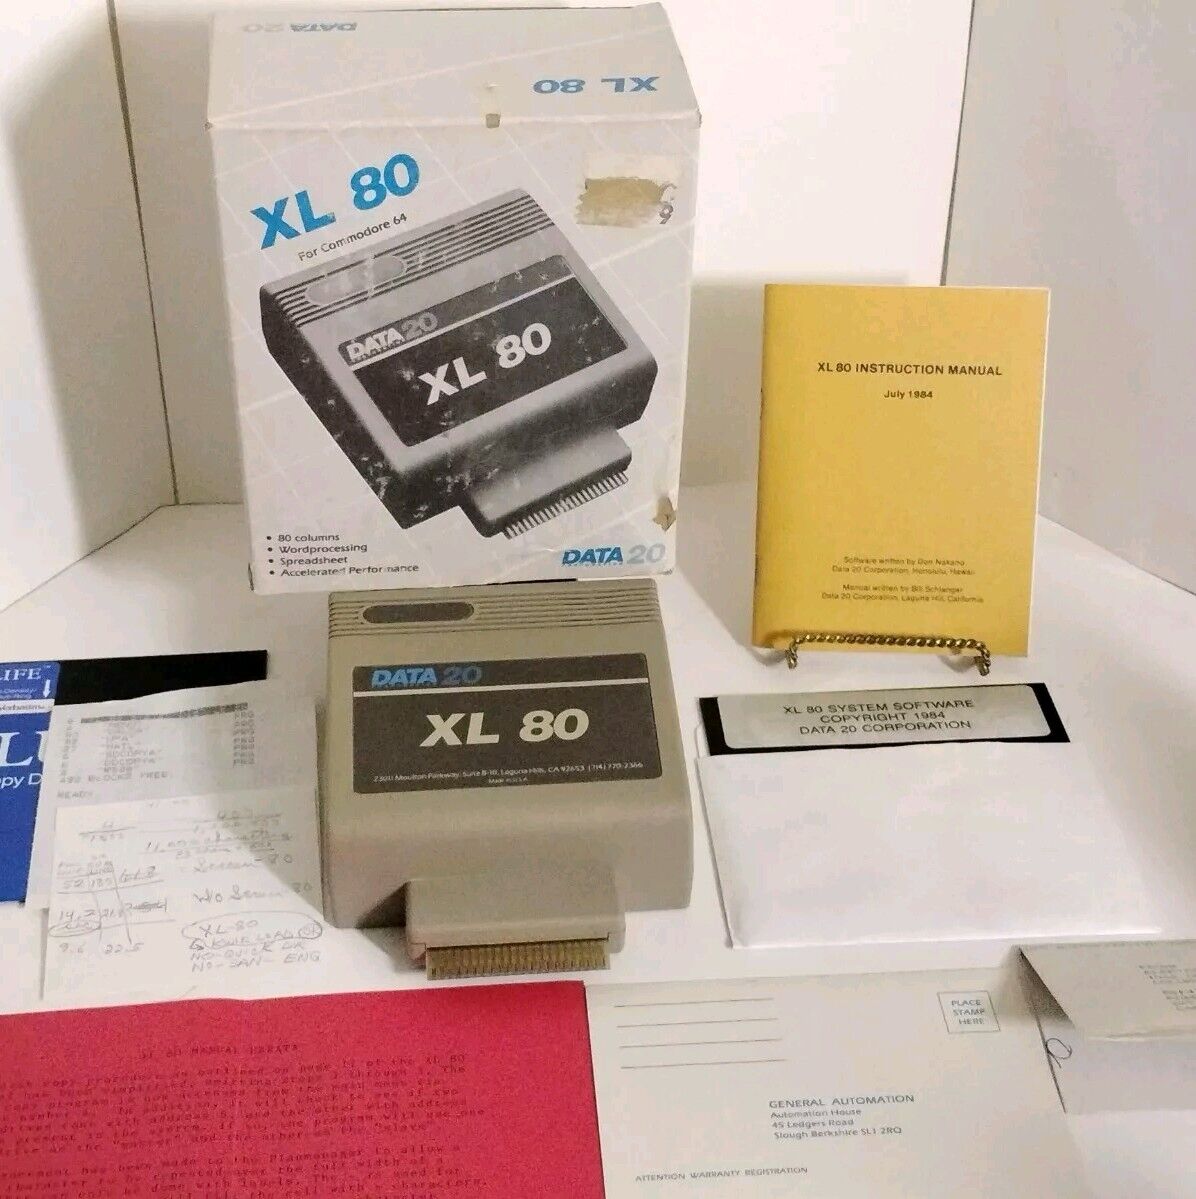 Data 20 - XL 80 - Commodore 64 C64 100% Complete 